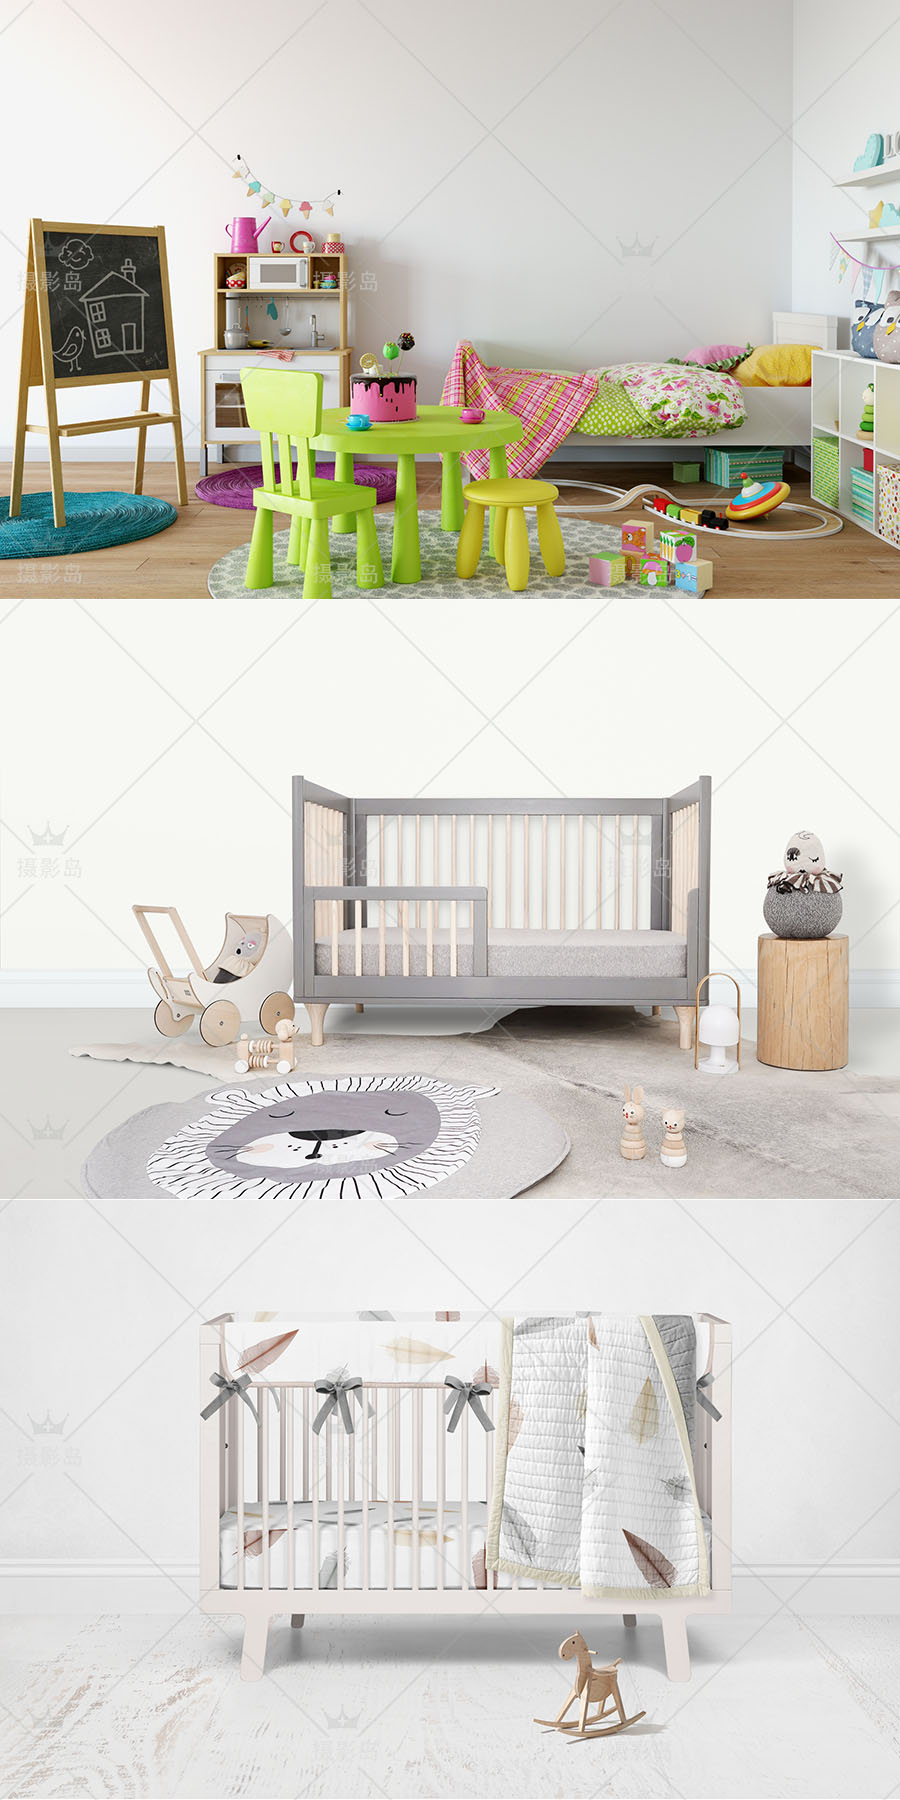 室内趣味创意设计3D立体合成背景模板， 宝宝儿童房效果抠图PSD素材